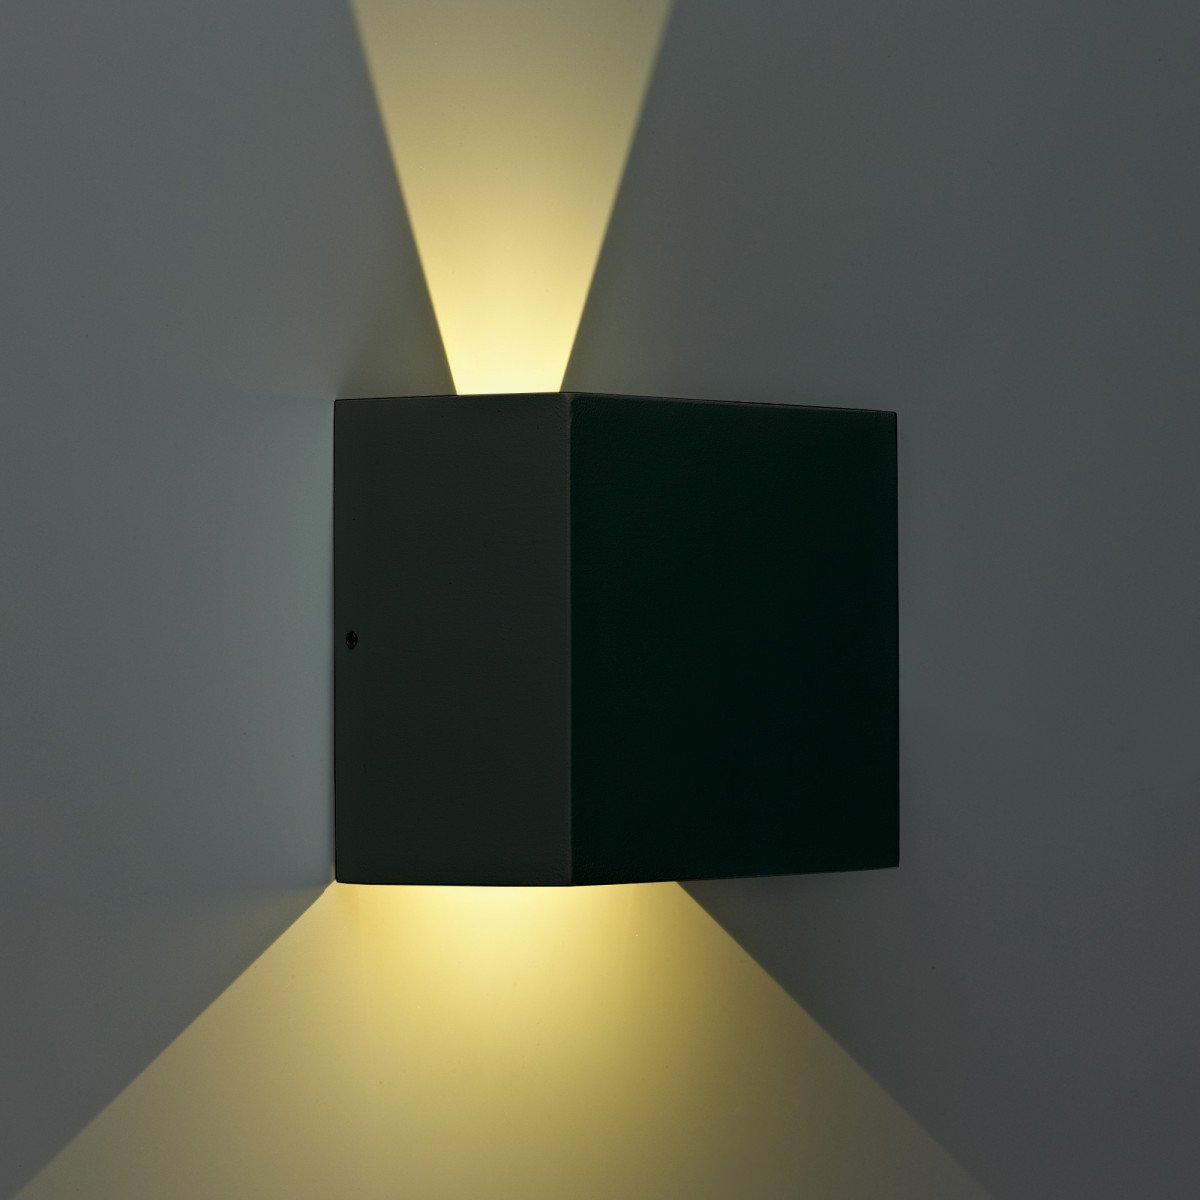 Modernen Wandleuchte Channel II LED Schwarz  Wandstrahler hat 4 Klappen, mit denen Sie sowohl den oberen und unteren Lichtstrahls einstellen können, verbauten LED's